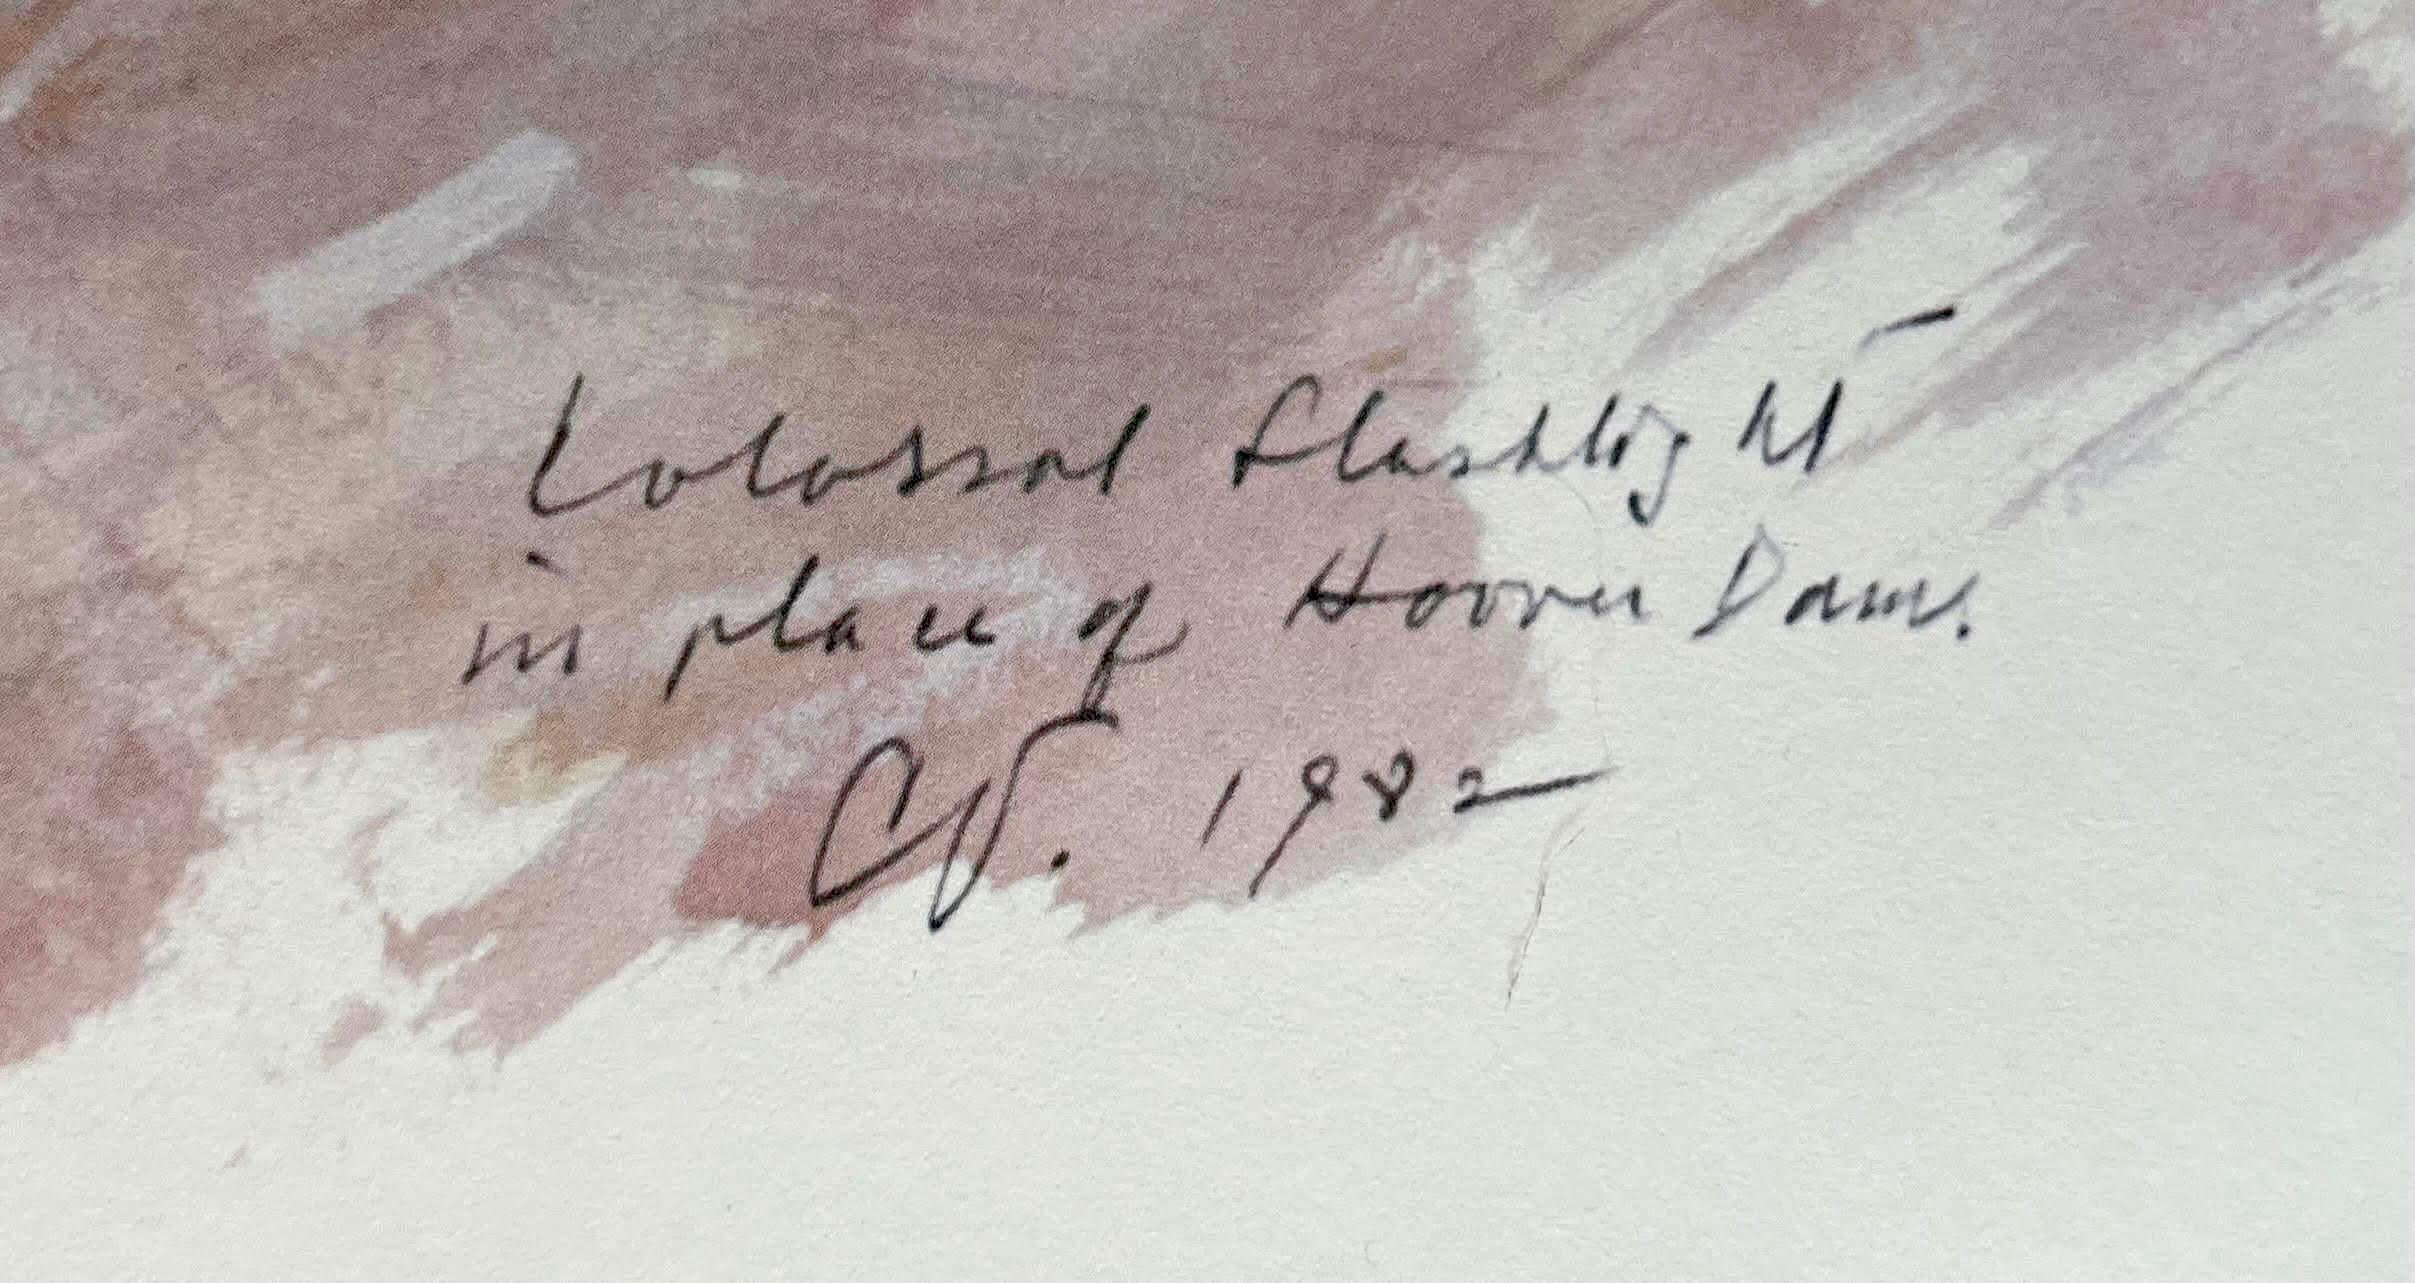 Claes Oldenburg
Lithographie imprimée en couleurs sur papier vélin de Rives
Signé au crayon Oldenberg (en bas à droite) ; numéroté 88/100 (en bas à gauche)
33 × 23 pouces
Non encadré
Exécutée en 1982, cette impression est le numéro 88 de l'édition